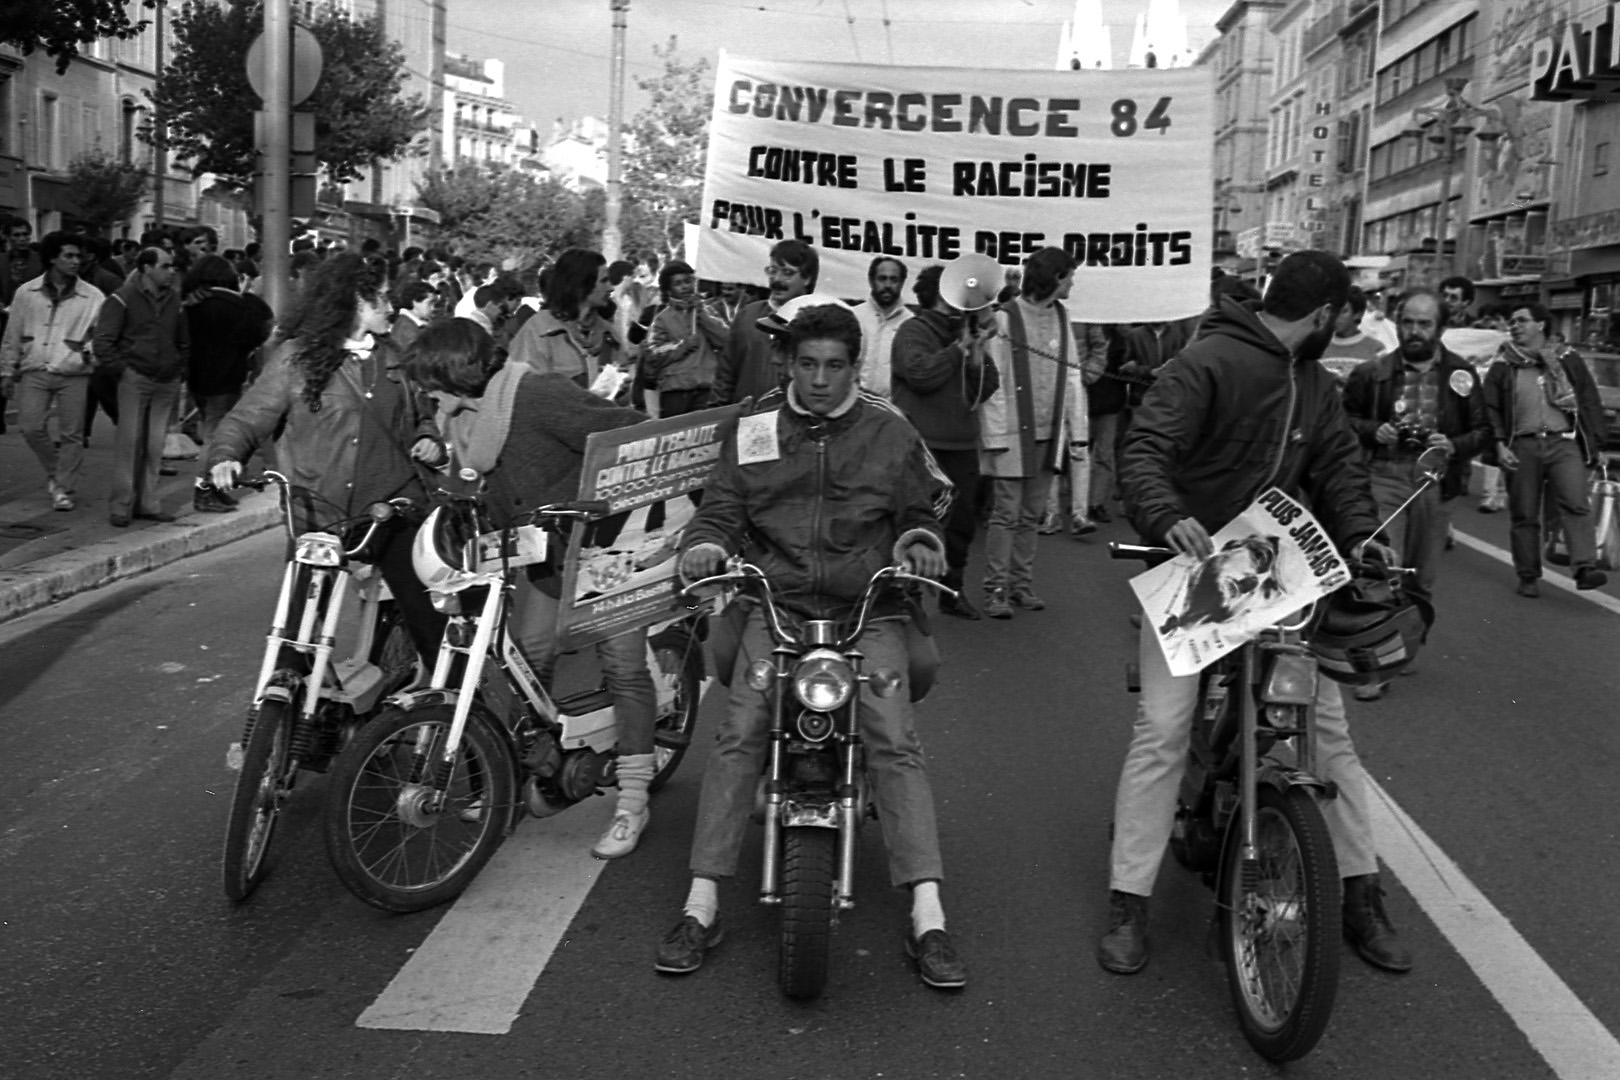 La marche Convergence de 1984. Crédit : Pierre Ciot